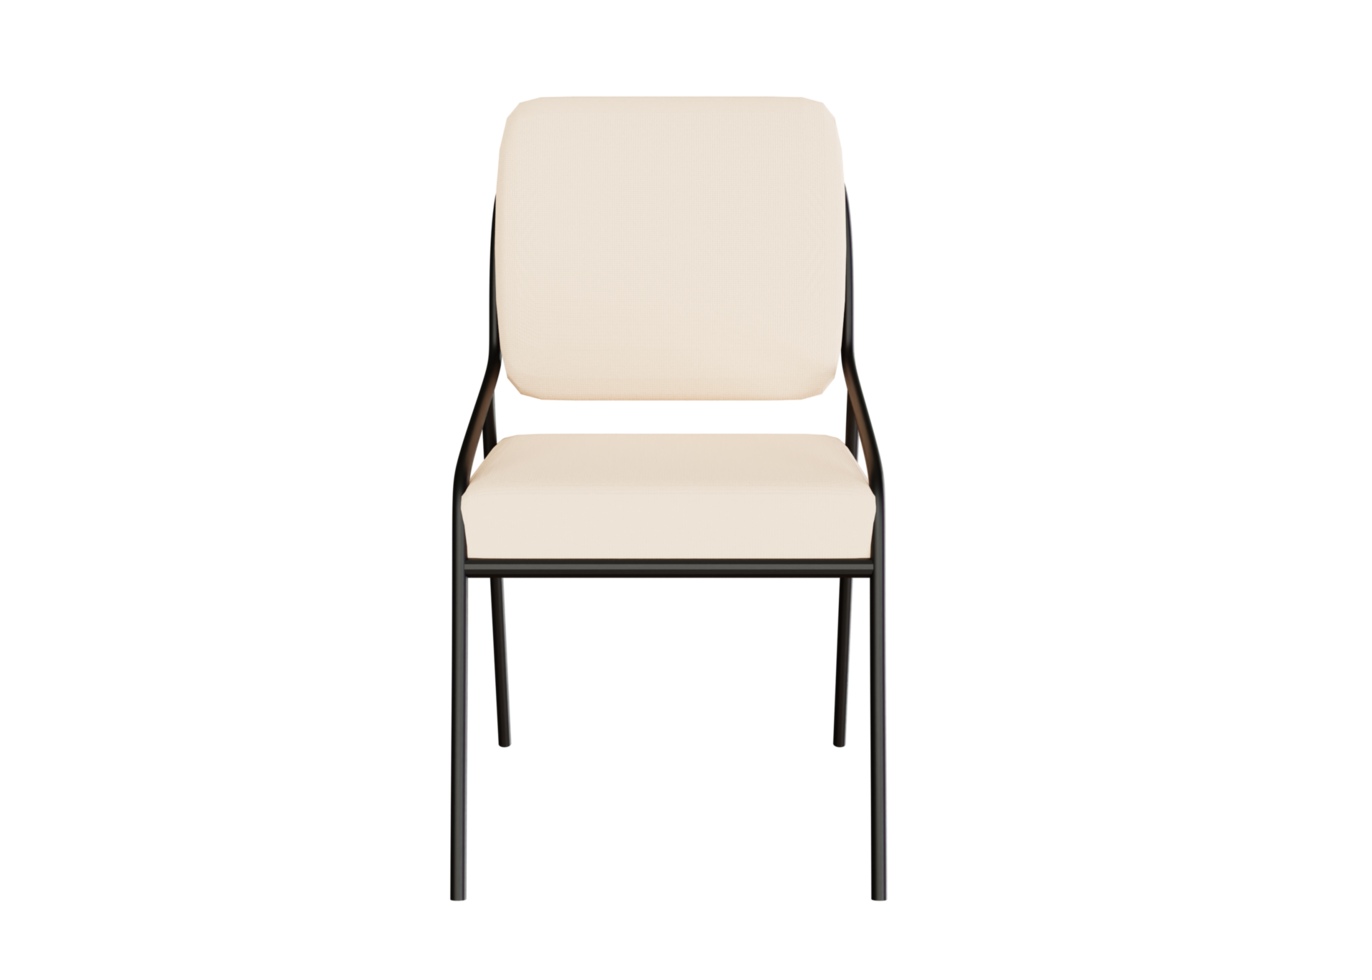 projetar renderização 3d de uma cadeira para necessidades de móveis png